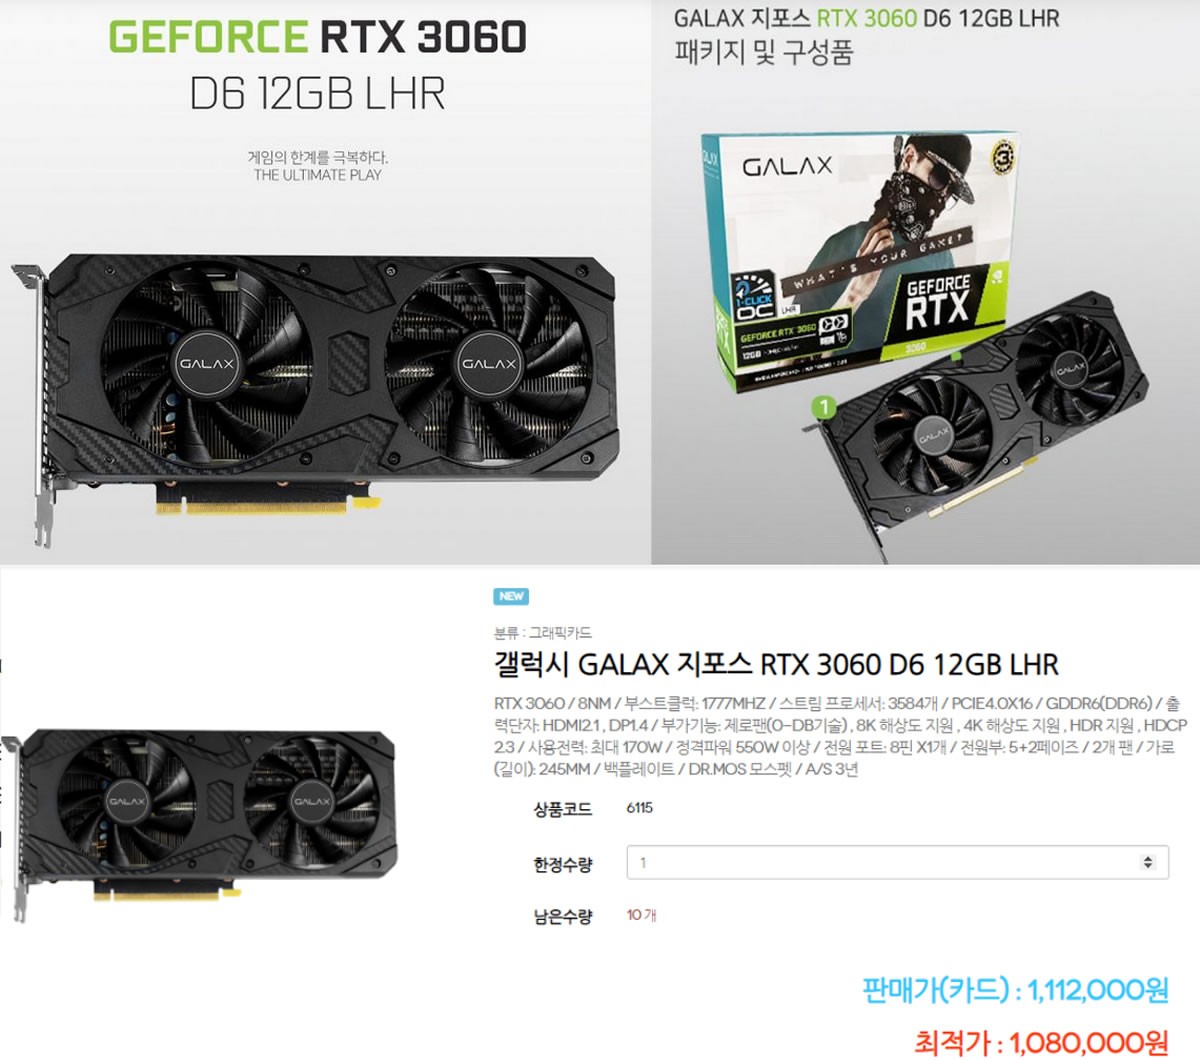 Une toute première NVIDIA GeForce RTX 3060 LHR en vente, à 966 dollars, elle n'intéressera donc ni les gamers, ni les miners